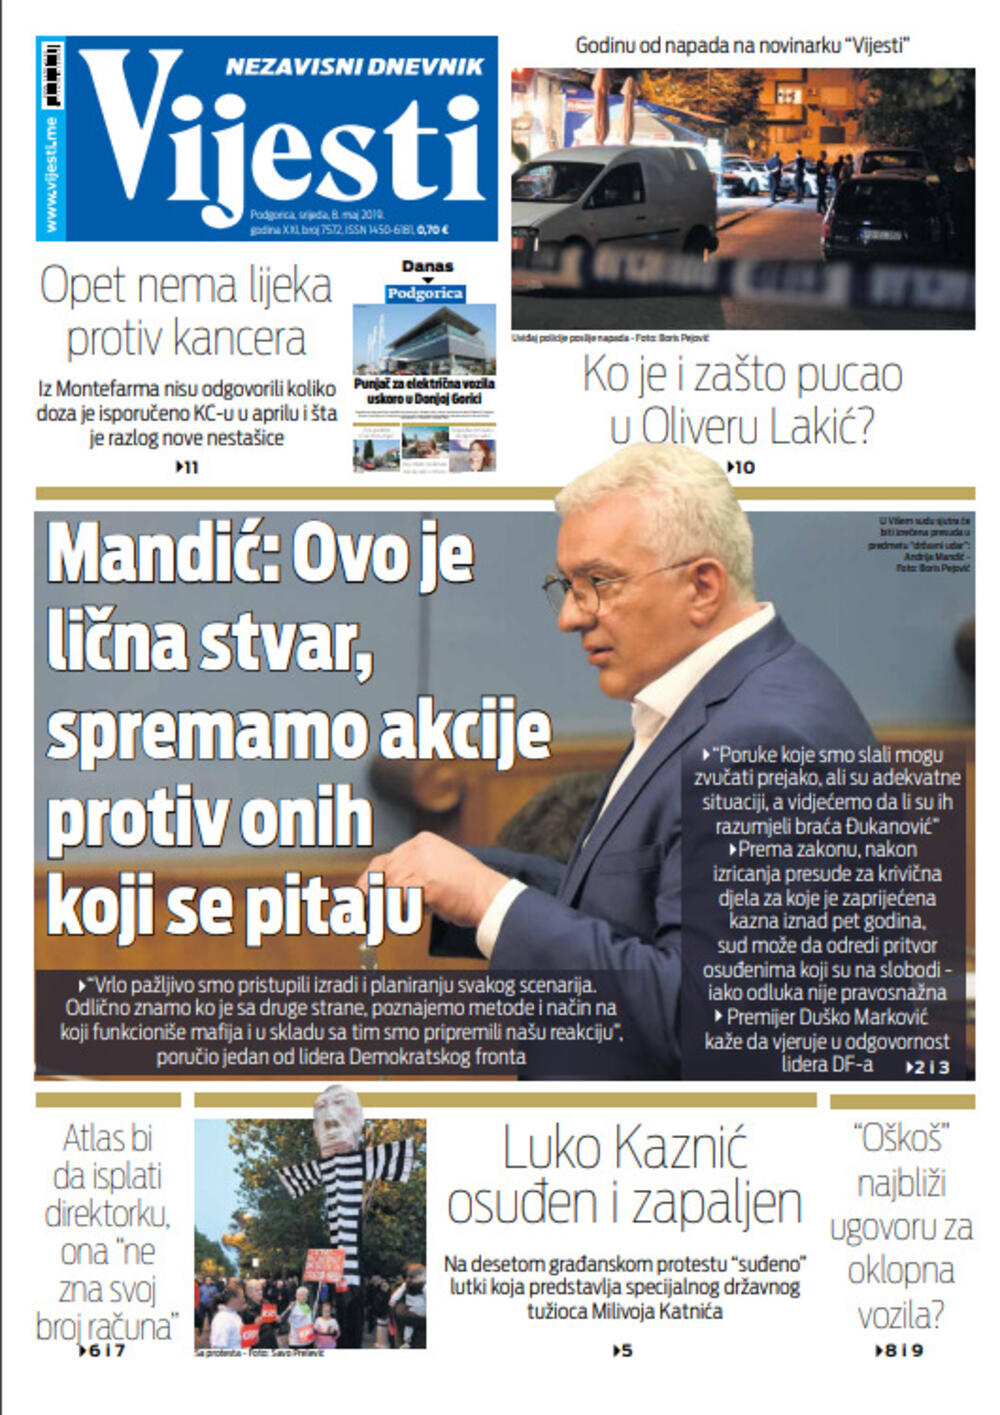 Naslovna strana "Vijesti" za osmi maj, Foto: "Vijesti"